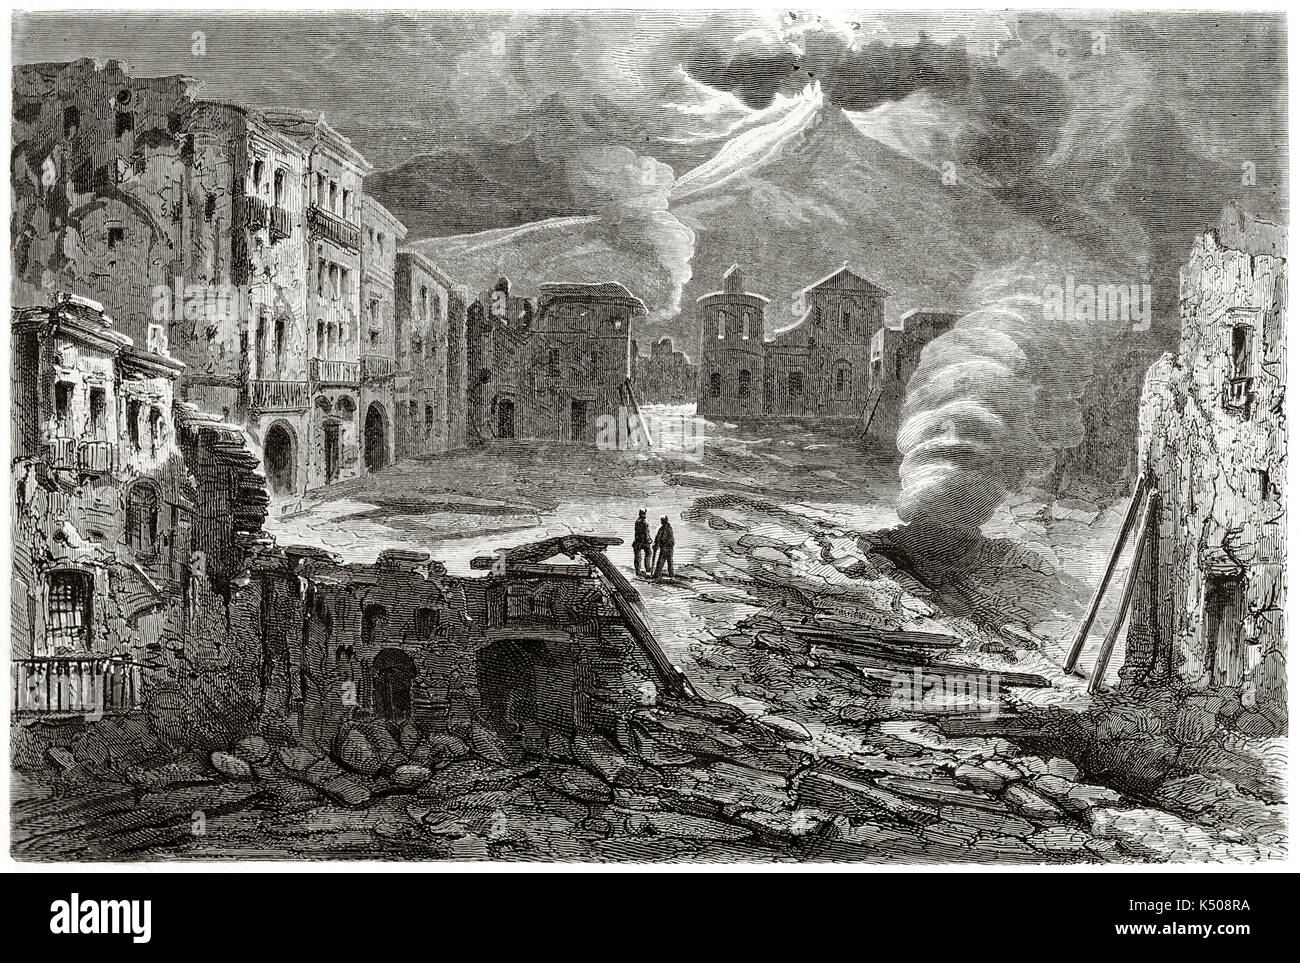 Ruiniert und verwüstet Szenario in Torre del Greco Hauptplatz während Vesuv Eruption im Jahre 1861 Italien. Von Riou nach Foto von Unknown Author am Le Tour du Monde Paris 1862 veröffentlicht erstellt Stockfoto